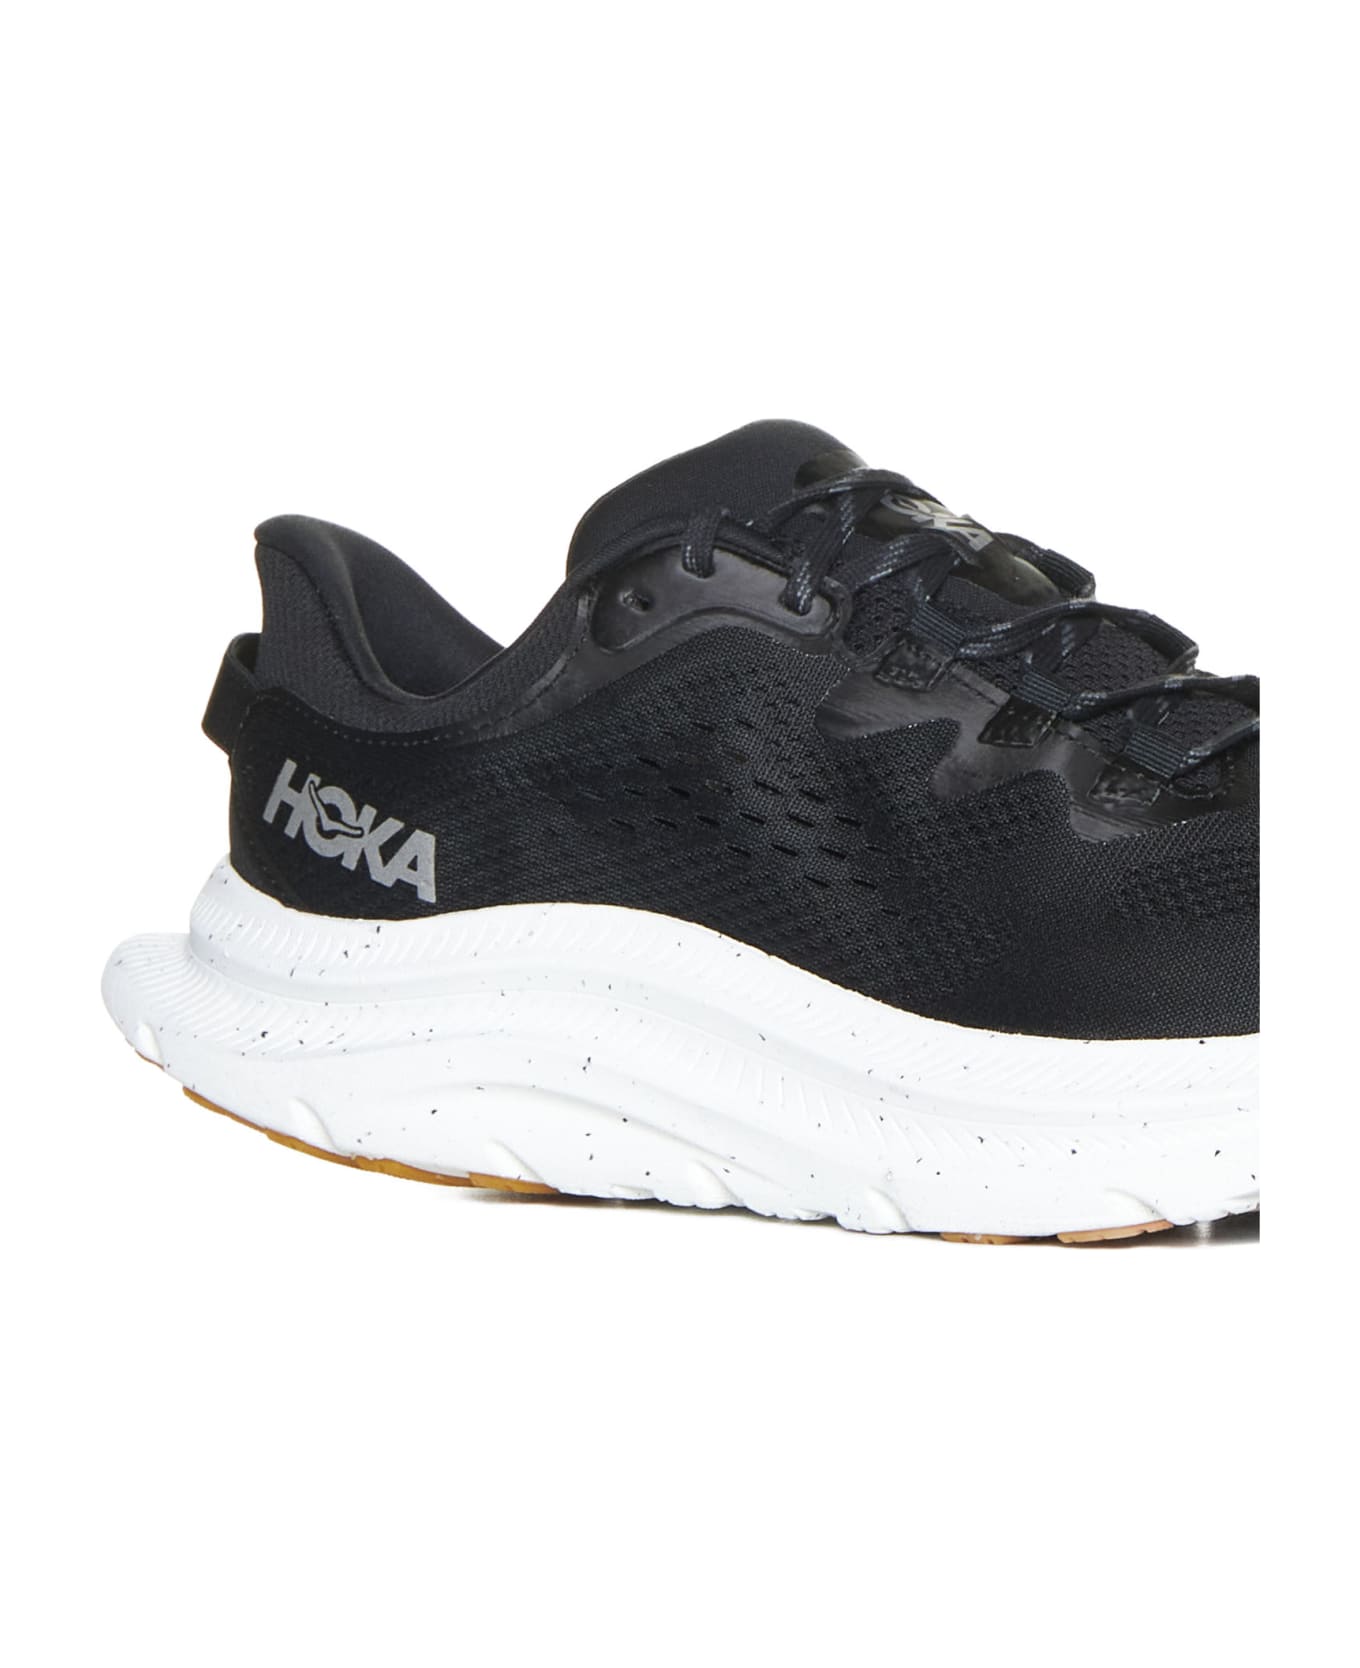 Hoka Sneakers - Black white